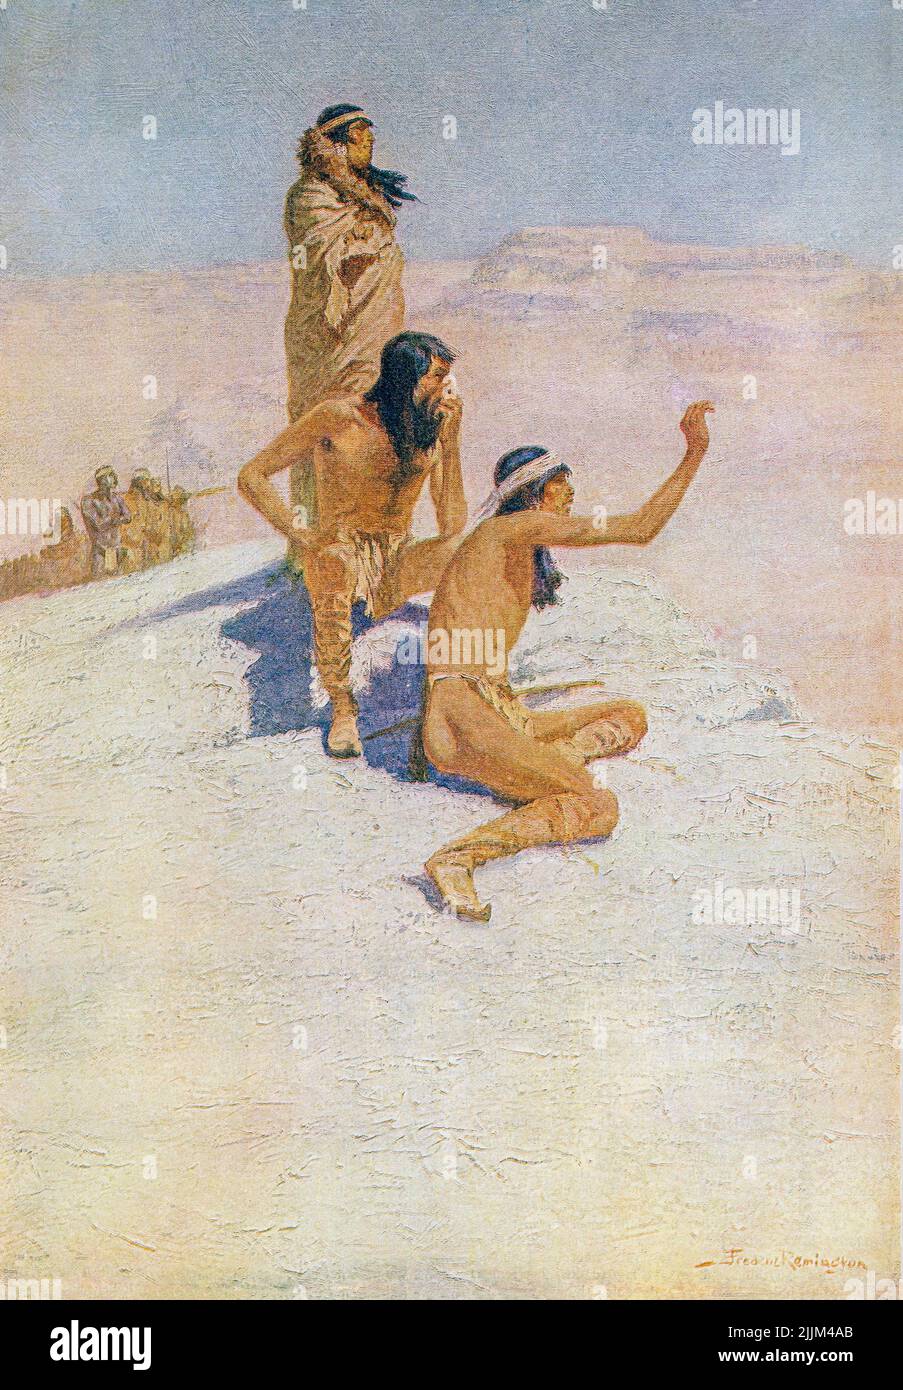 Cabeca de Vaca nel deserto. I grandi esploratori. Álvar Núñez Cabeza de Vaca. Dopo un lavoro dell'artista americano Frederic Sackrider Remington, 1861 – 1909. Questa foto è il numero uno nella serie Great Explorers di Remington del 1905. Foto Stock